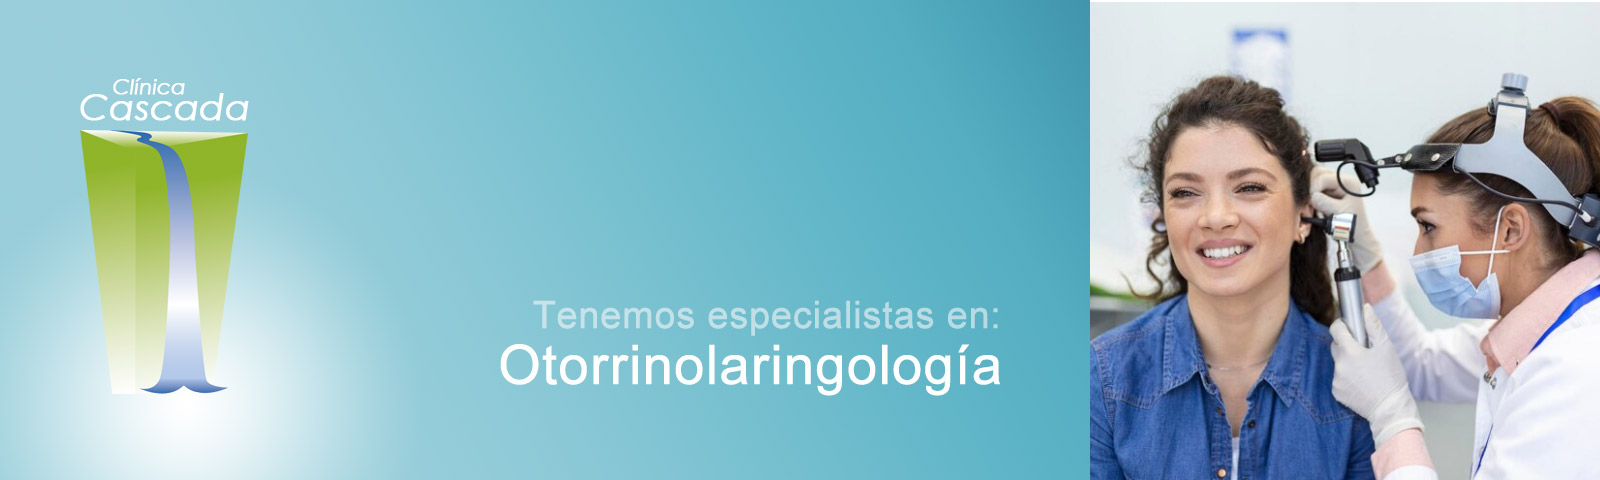 Especialistas en Otorrinolaringologia